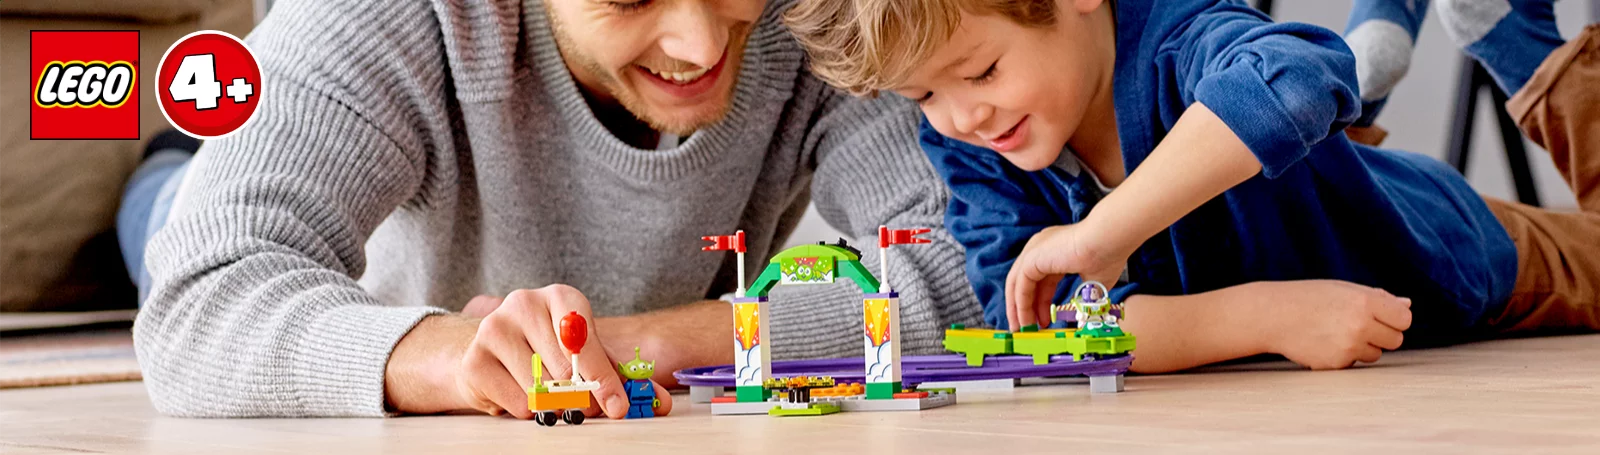 LEGO 4+ bei Spielzeugwelten.de